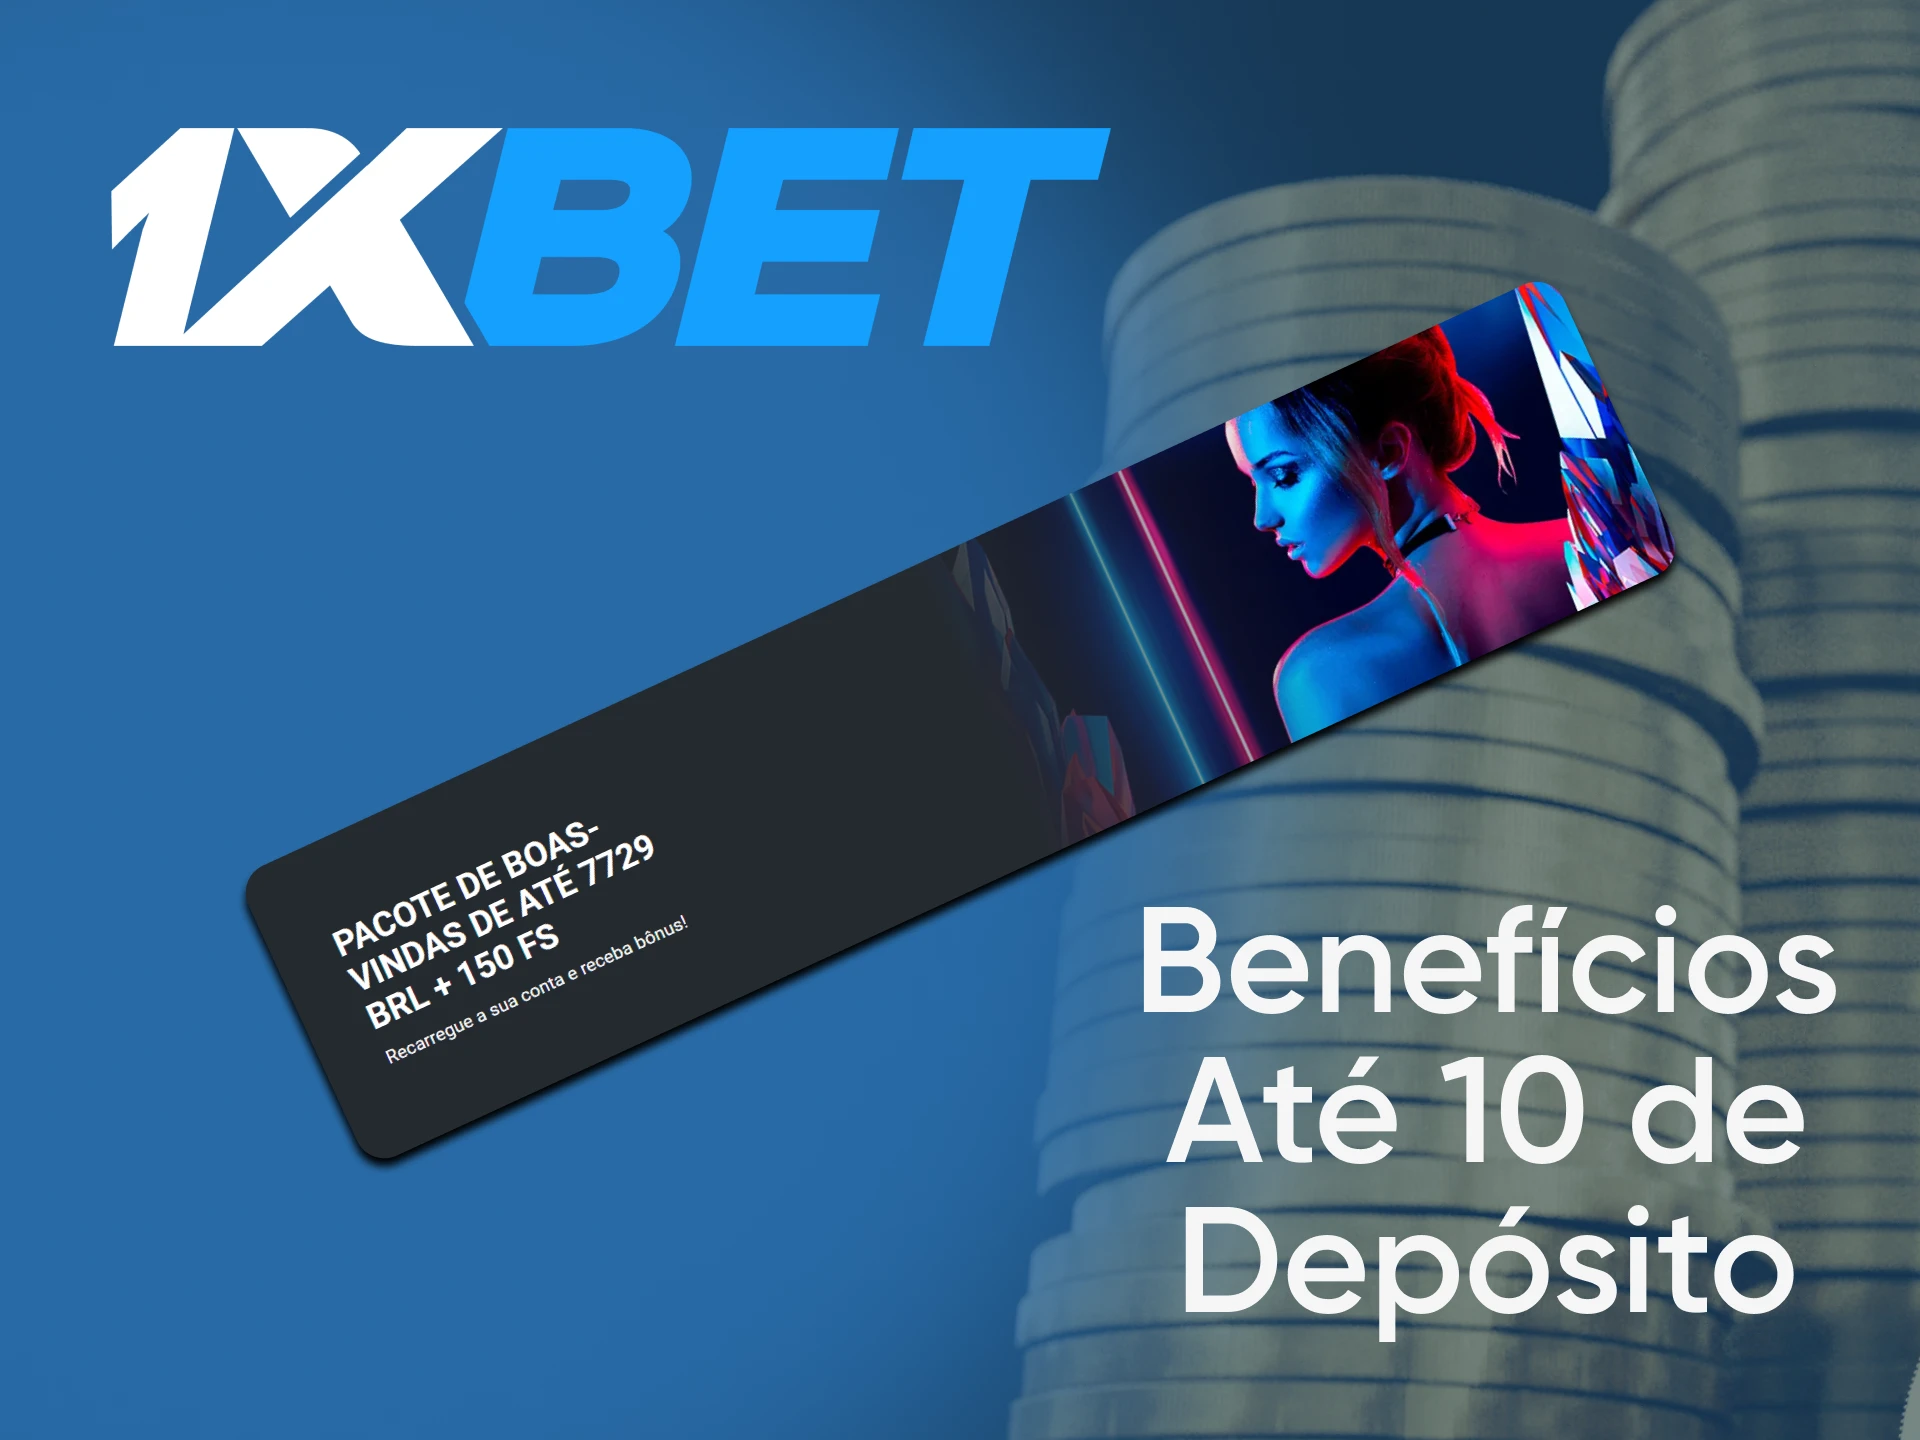 A 1xBet oferece bônus de depósito aos usuários brasileiros.